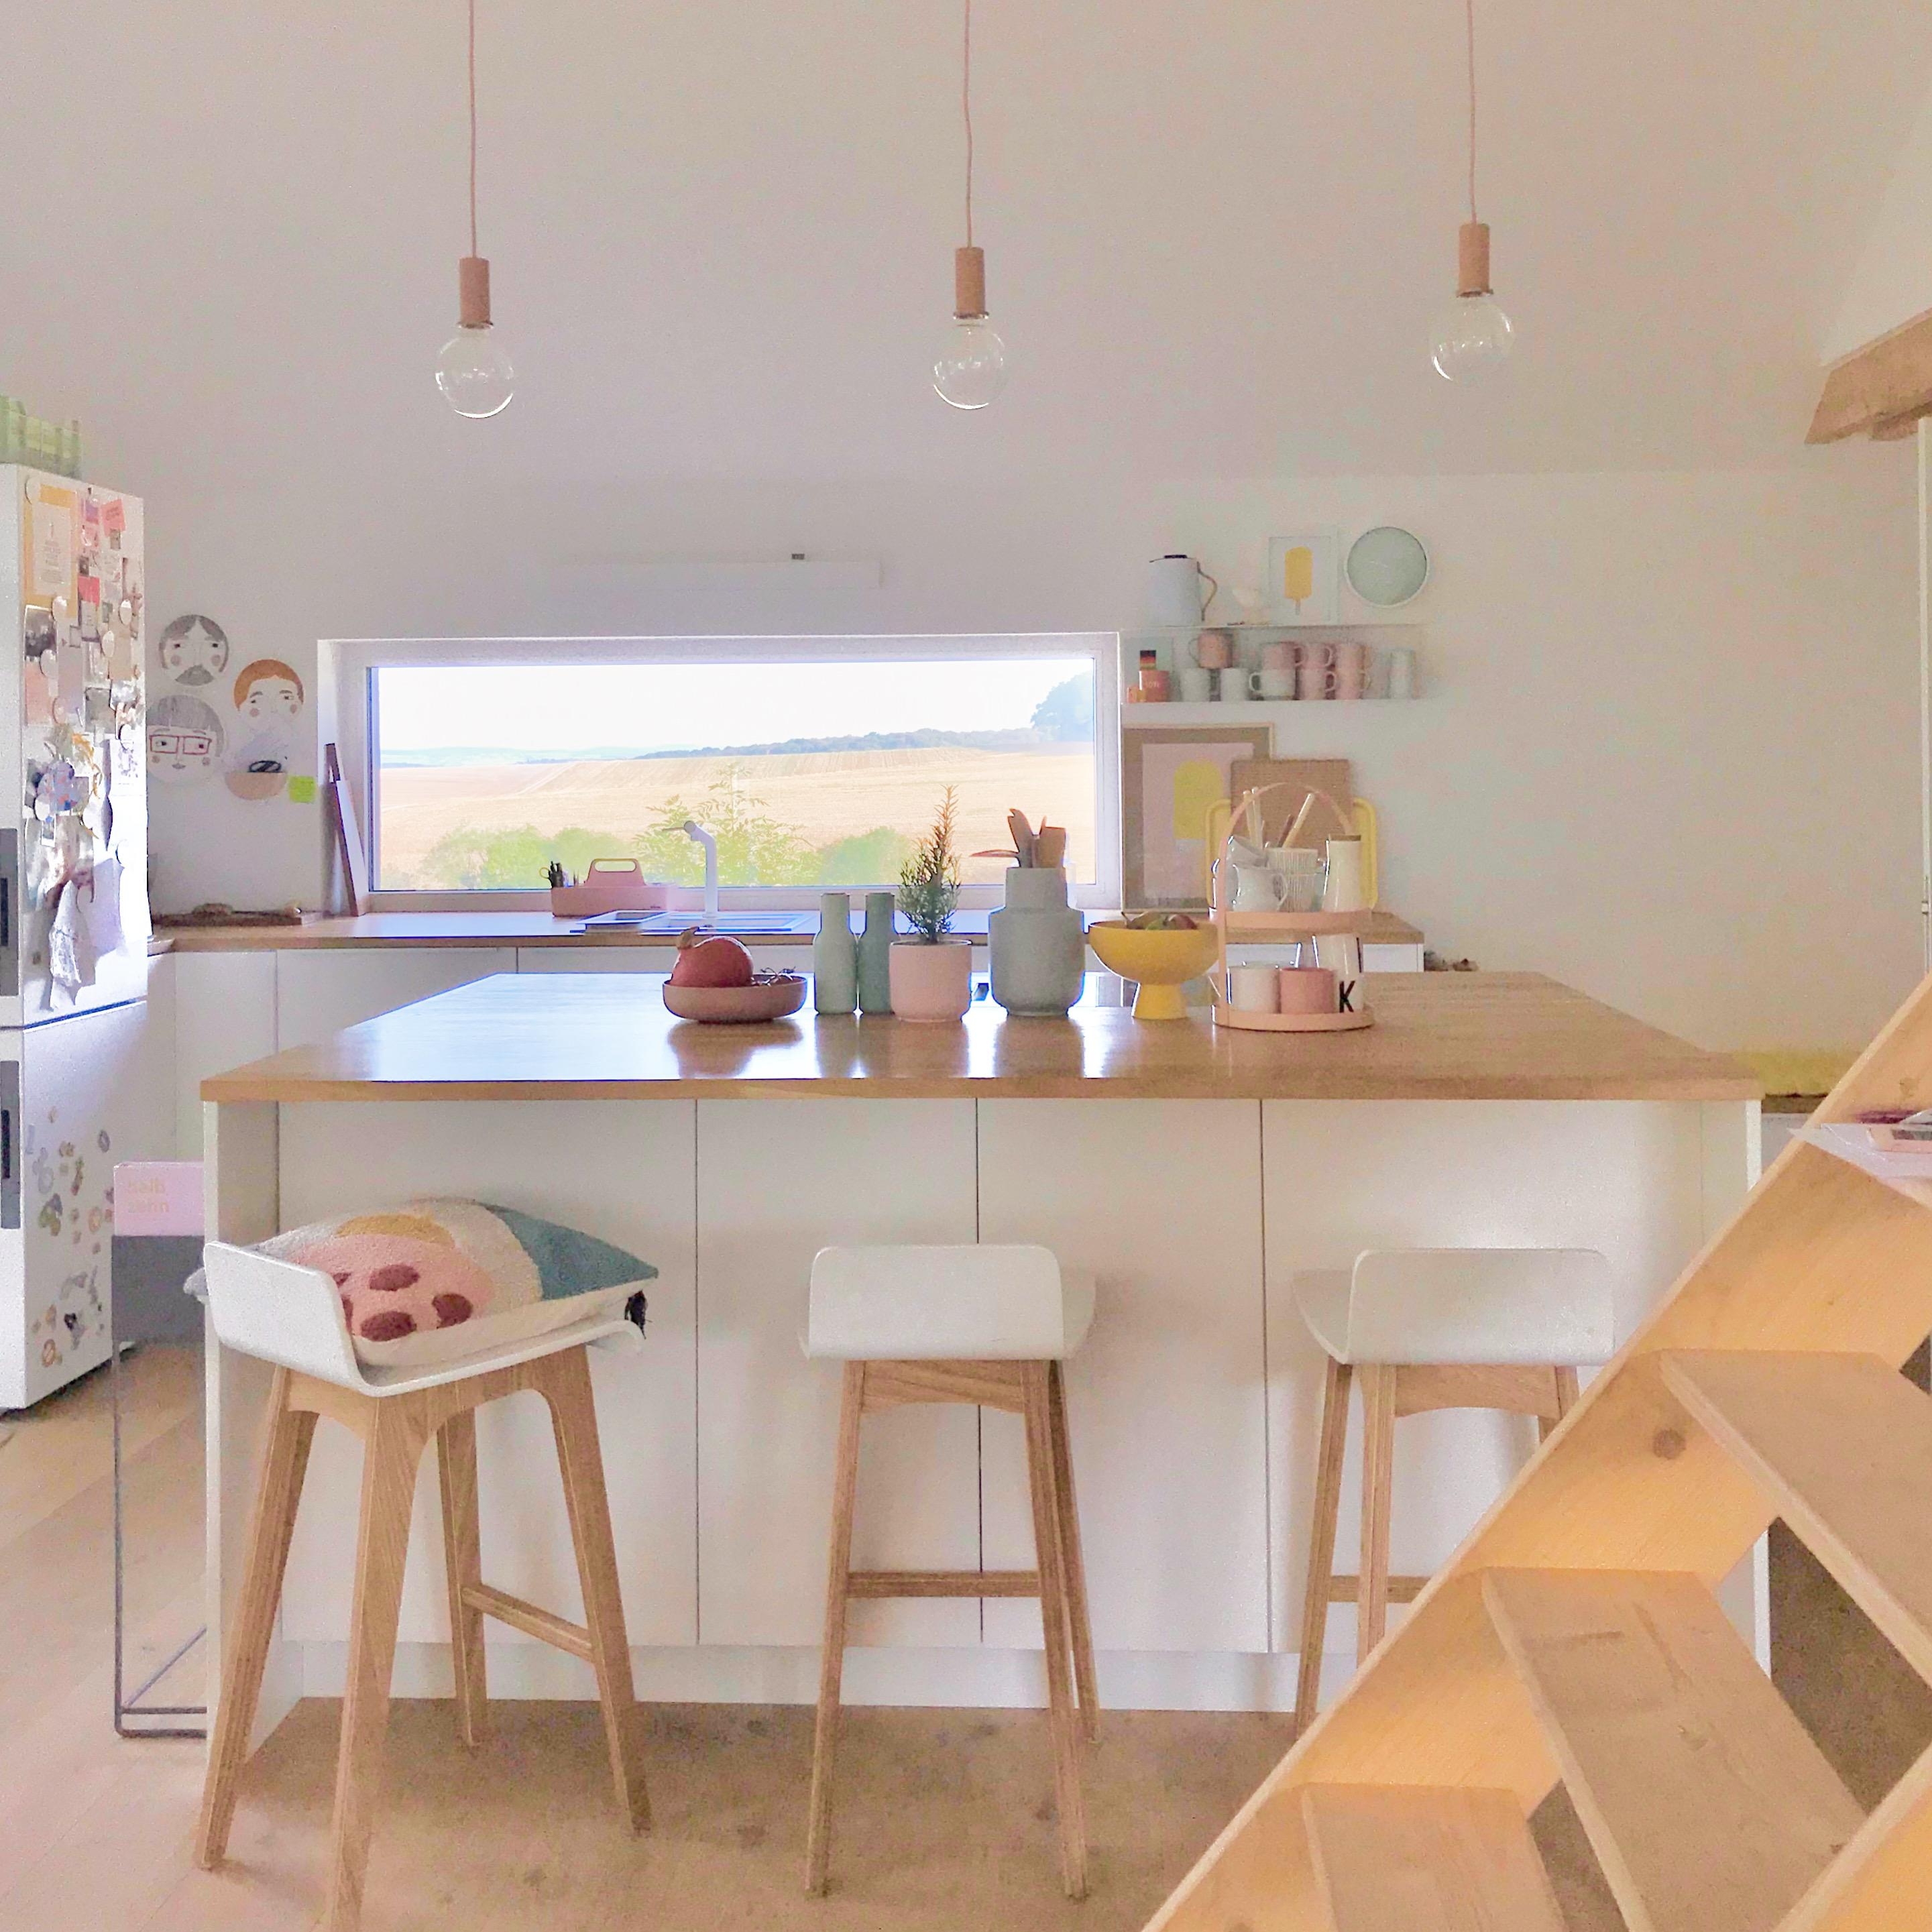 Küche mit Aussicht. #küche #kücheninsel #skandistyle #farbenfroh #pastell #küche #livingchallenge 